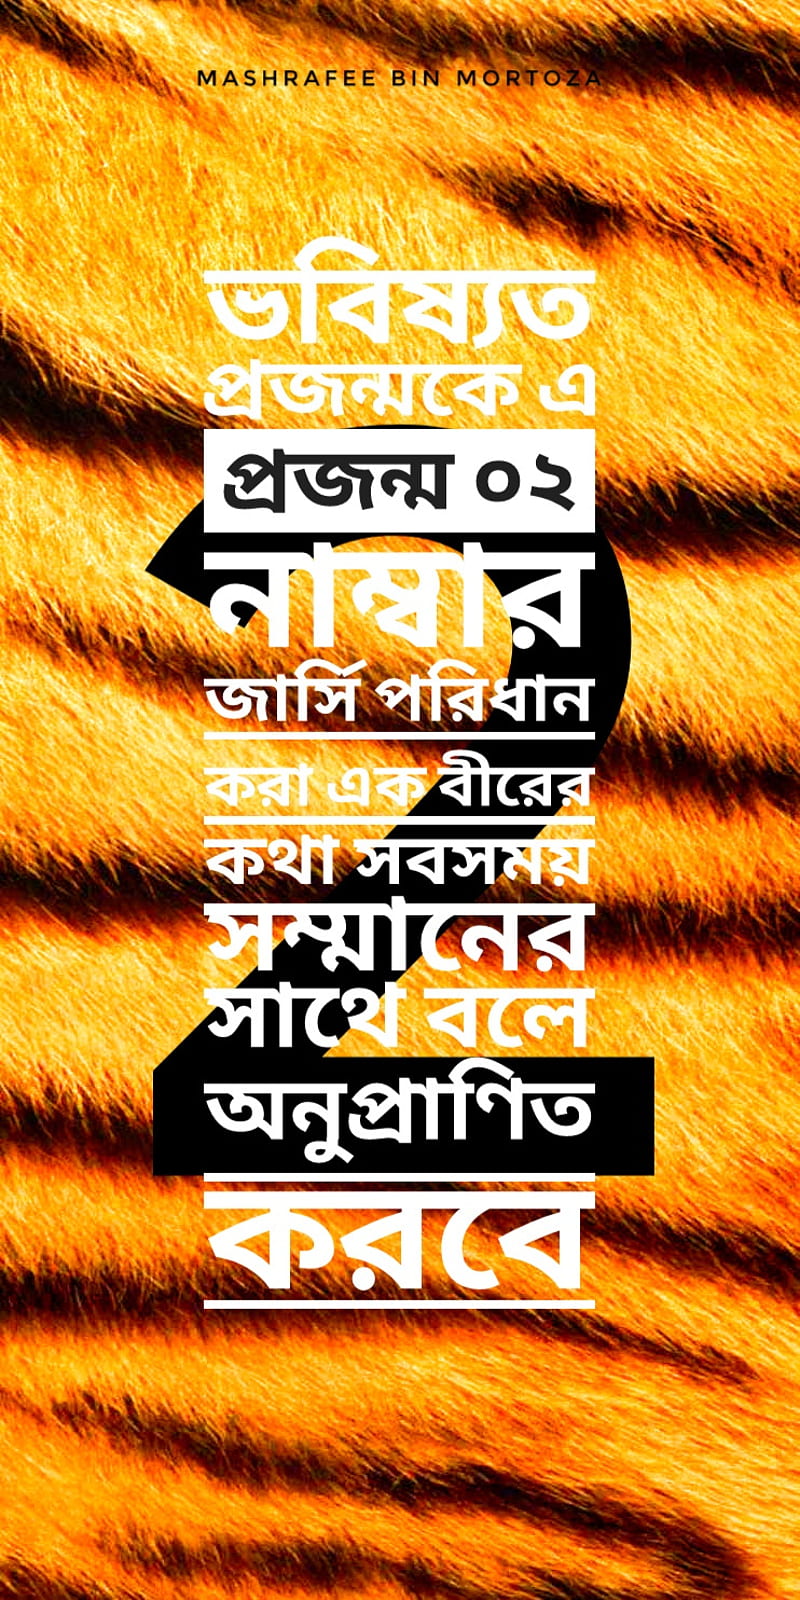 Mashrafee , mashrafee cricket, mash, tigers, bangladesh, yellow, cricket, captain, , black, HD phone wallpaper